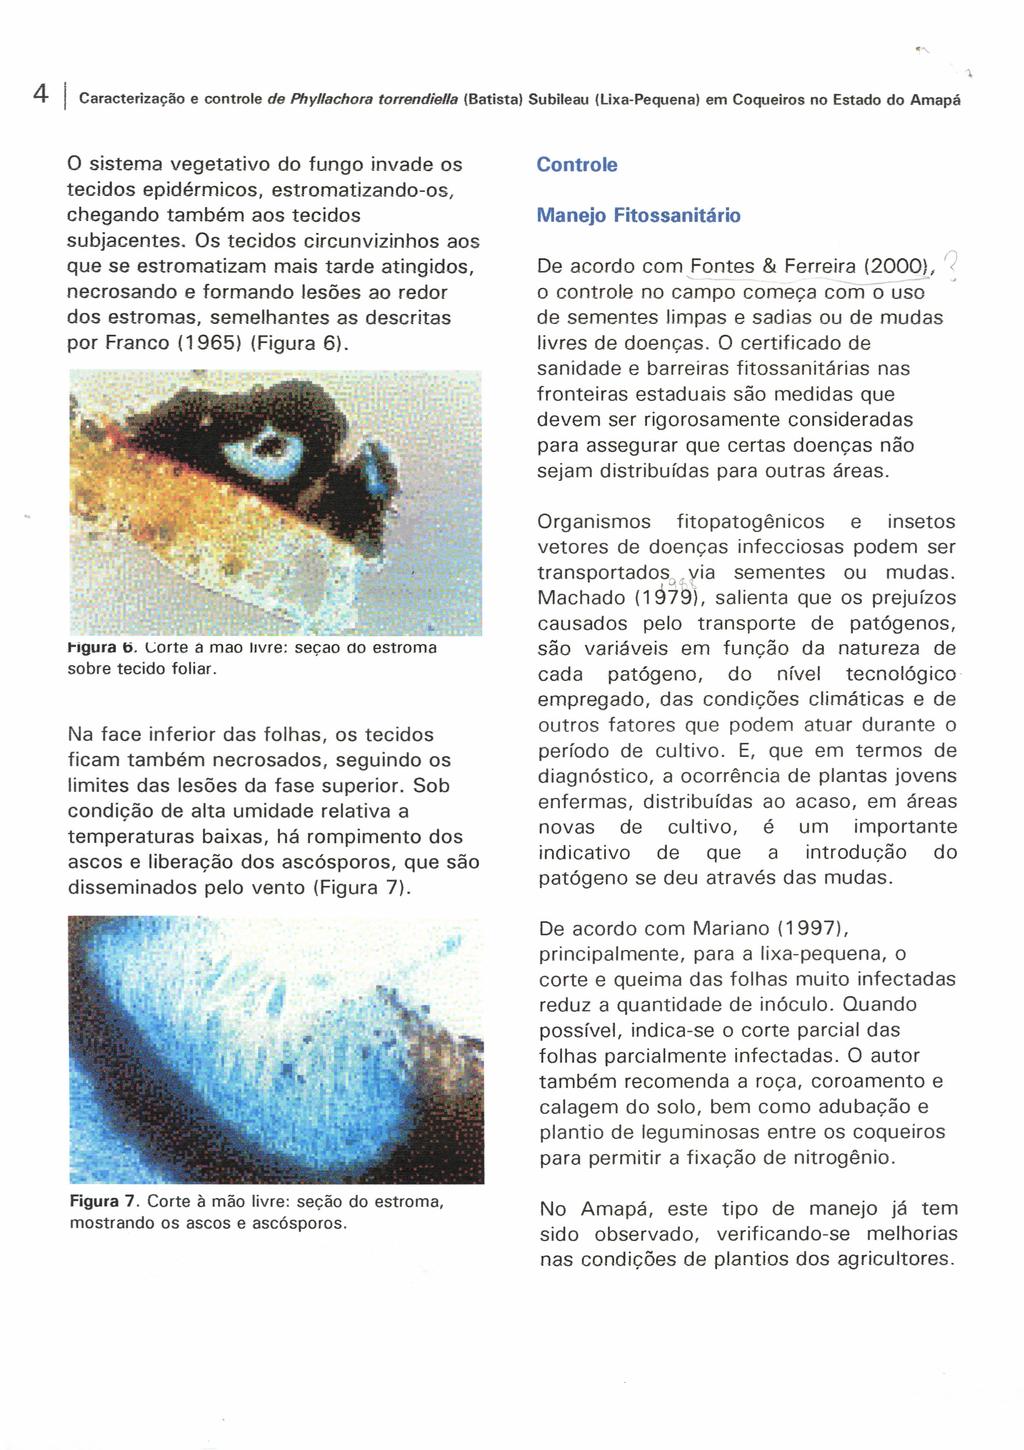 4 Caracterização e controle de Phy/lachora torrendiella (Batista) Subileau (lixa-pequena) em Coqueiros no Estado do Amapá o sistema vegetativo do fungo invade os tecidos epidérmicos,